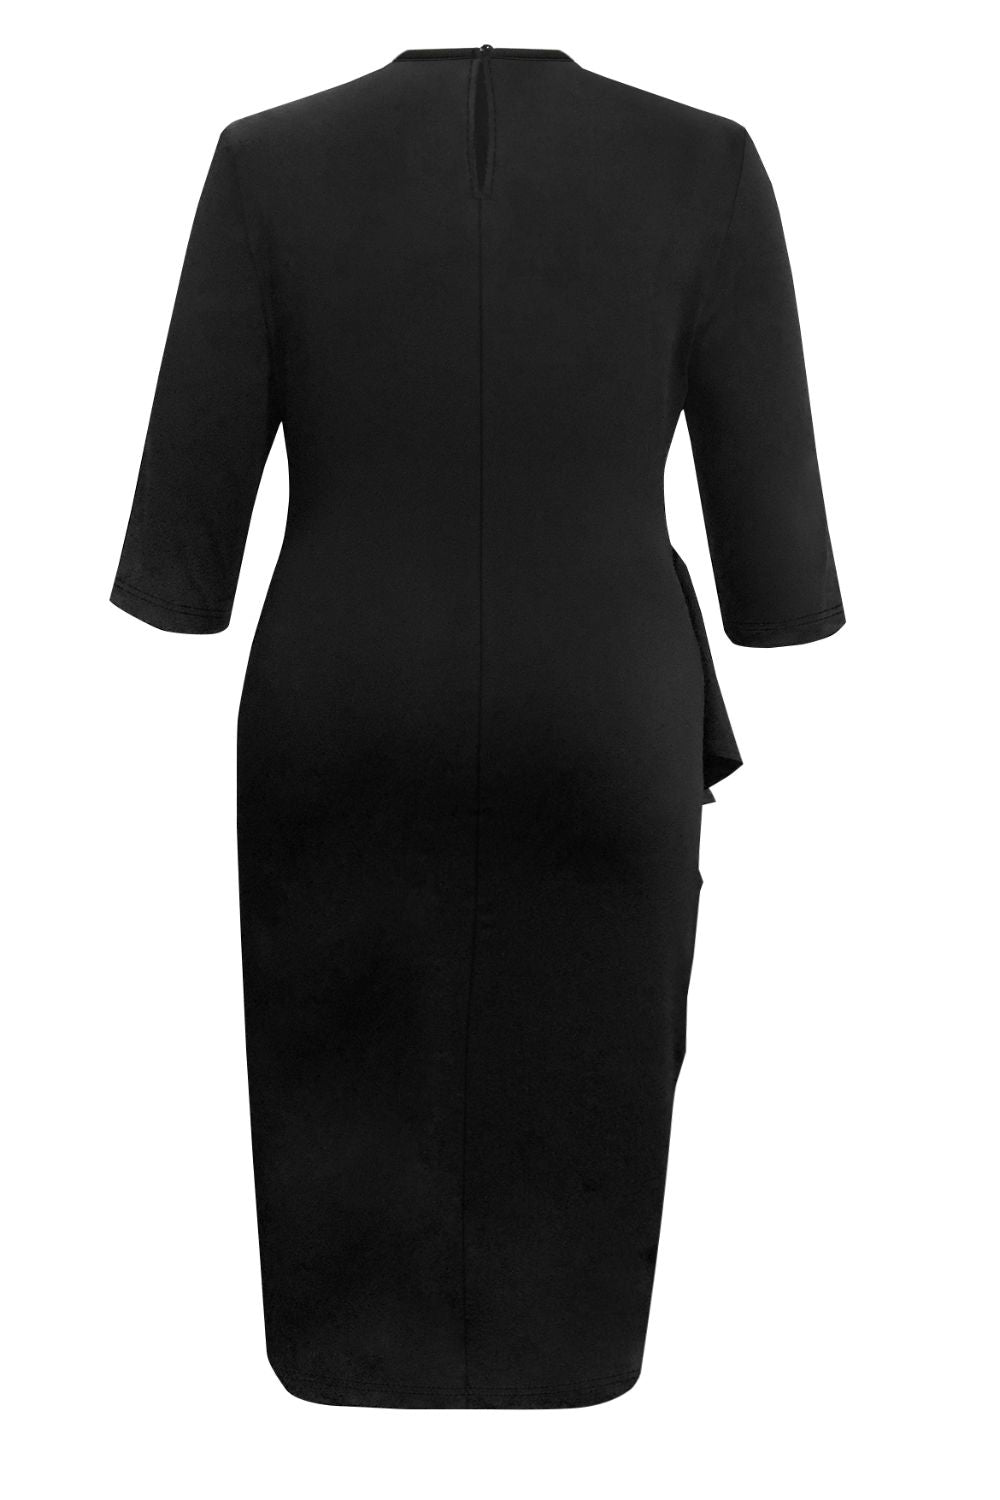 Plus Size Ruffle Trim Round Neck Long Sleeve Dress | Sugarz Chique Boutique